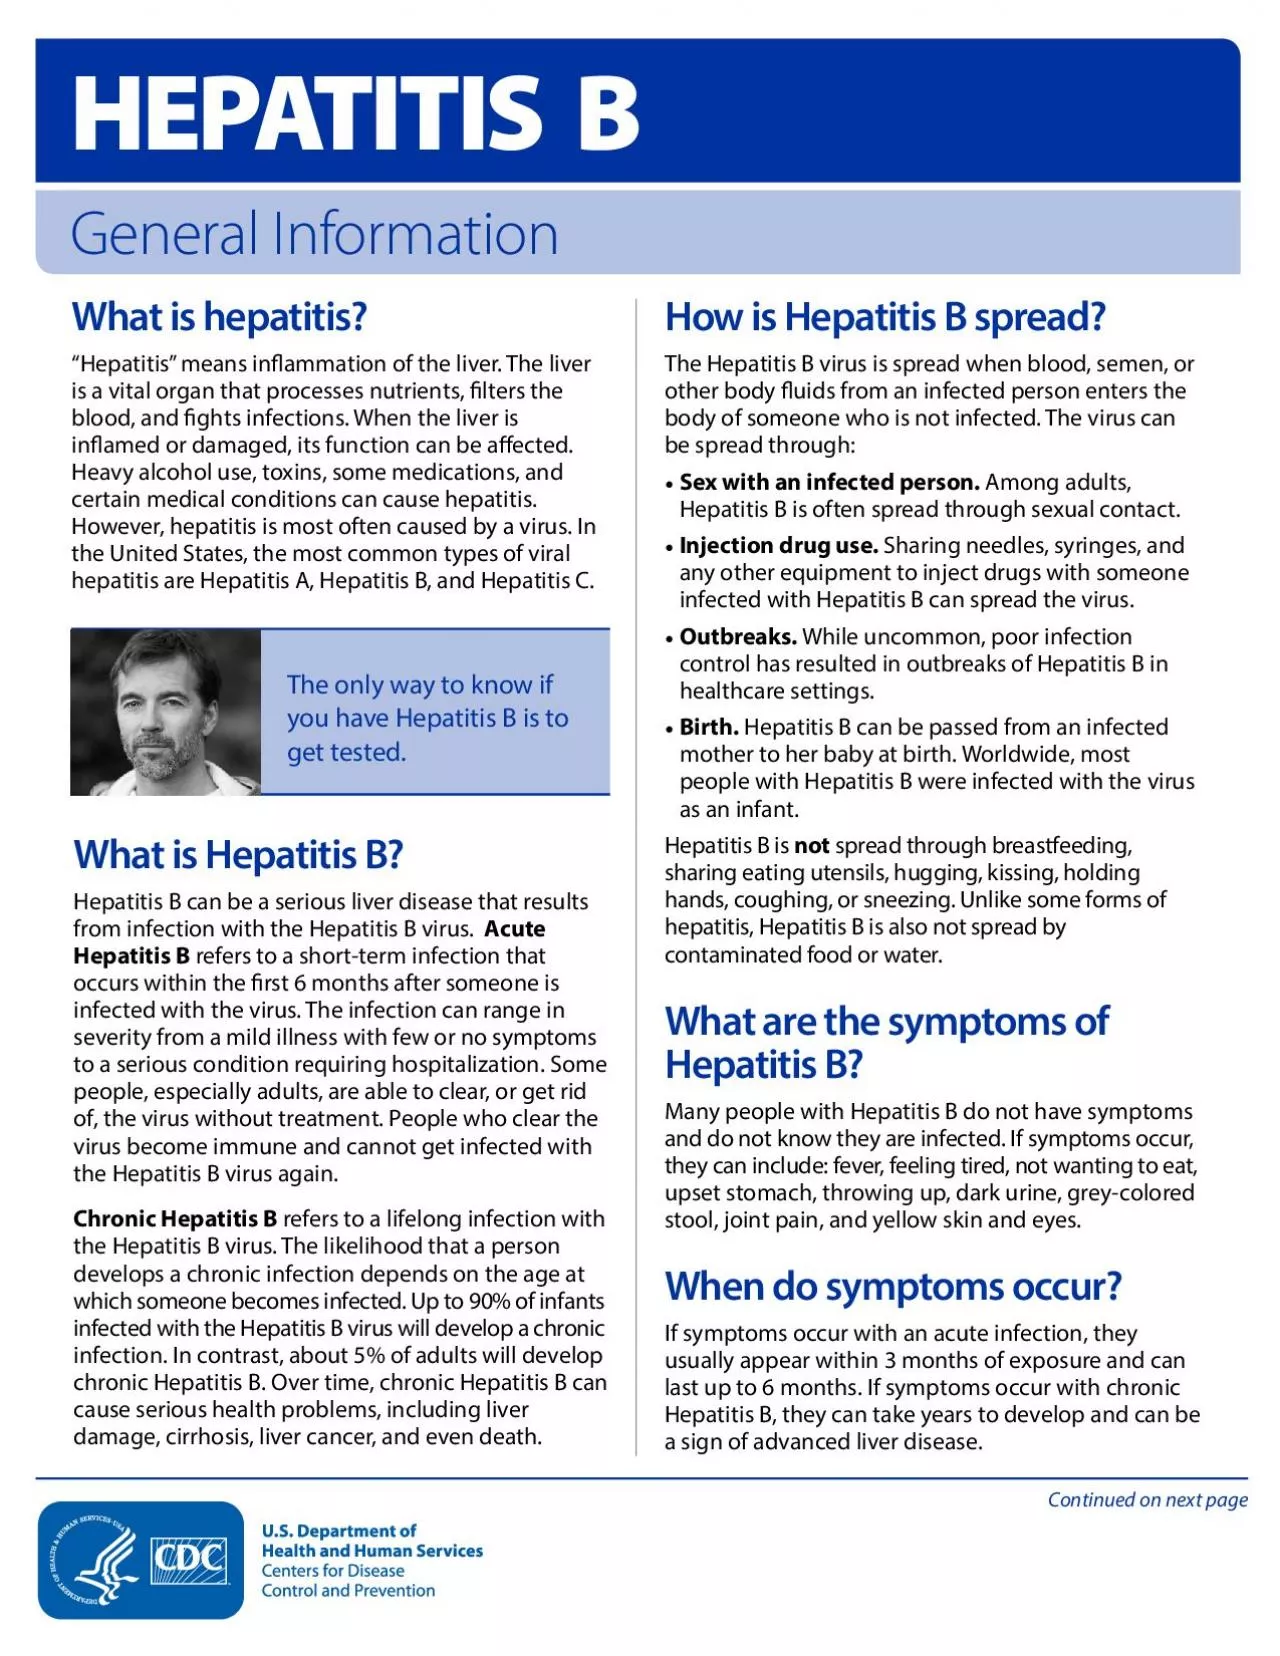 HEPATITIS BGeneral InformationWhat is hepatitis 147Hepatitis148